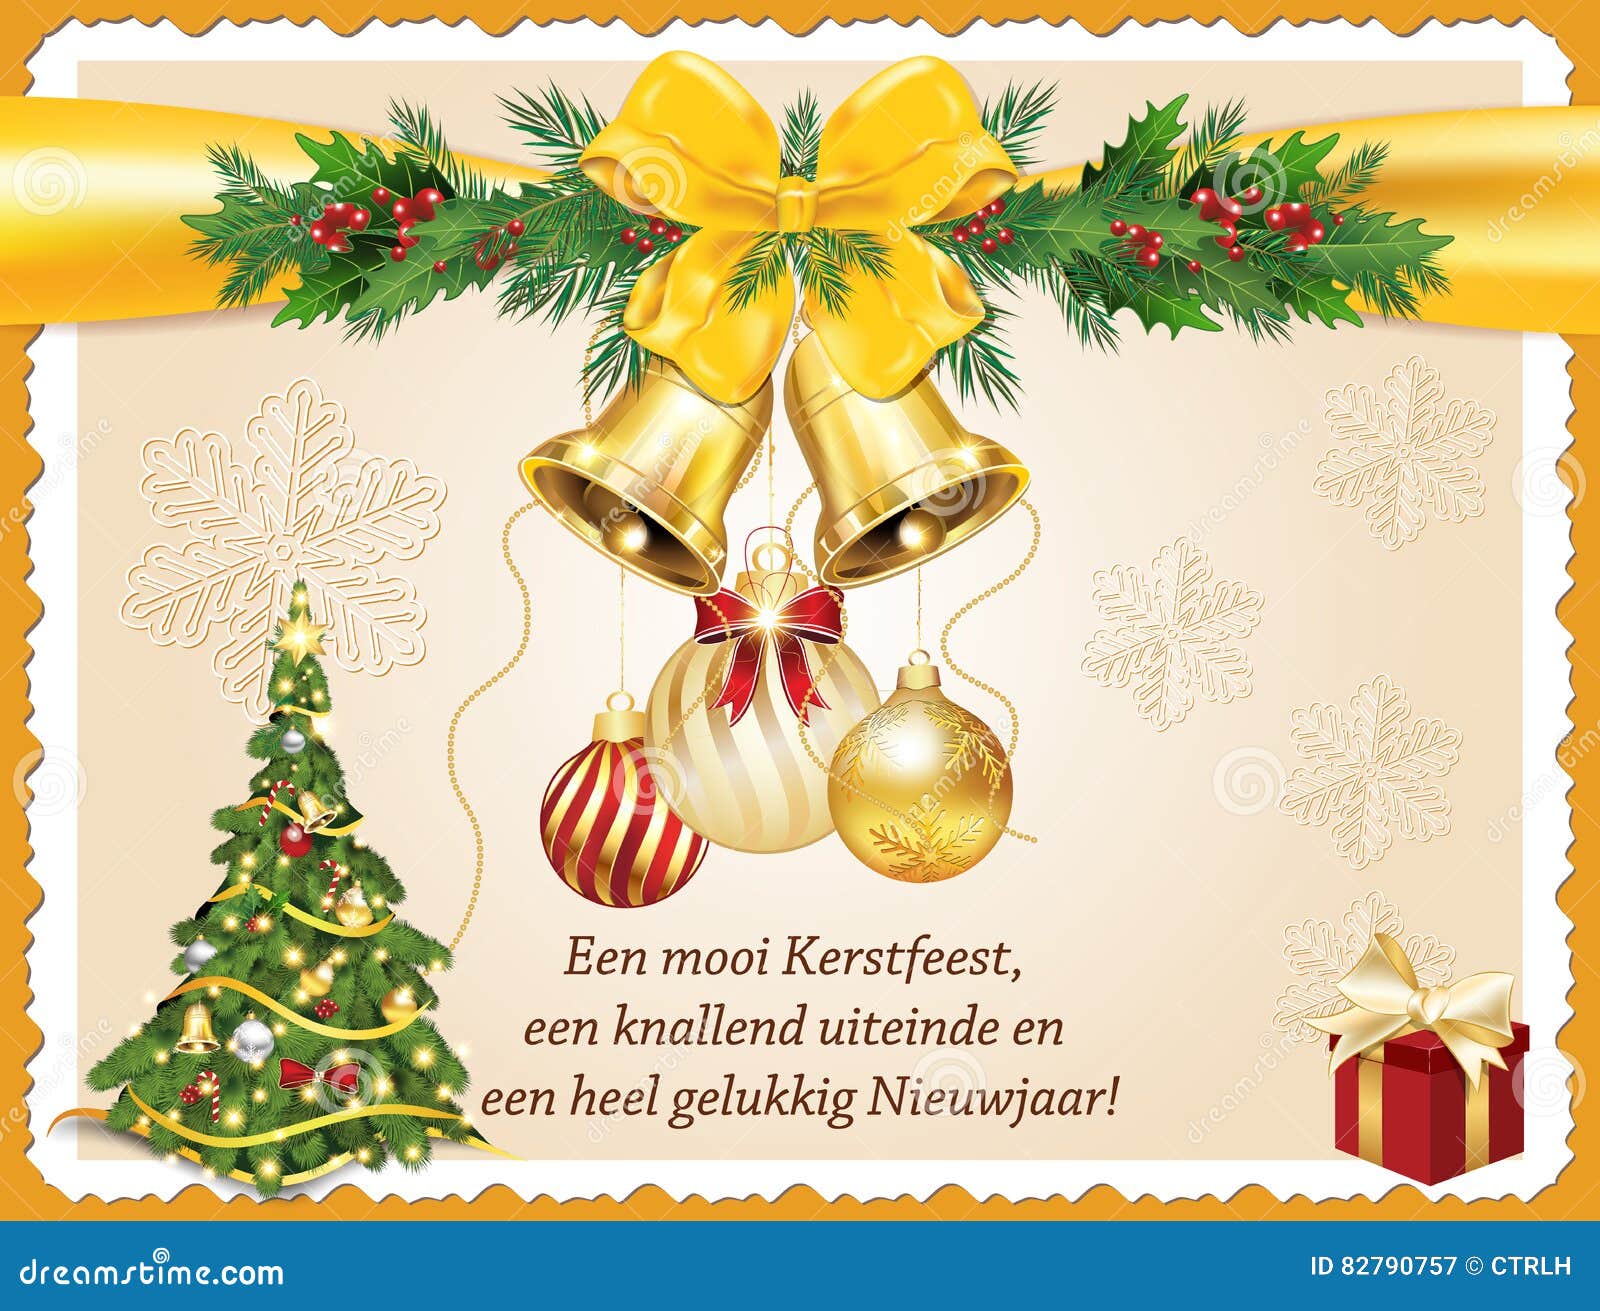 Auguri Di Buon Natale Olandese.Cartolina D Auguri Olandese Del Nuovo Anno Di Affari Illustrazione Di Stock Illustrazione Di Stampa Anno 82790757